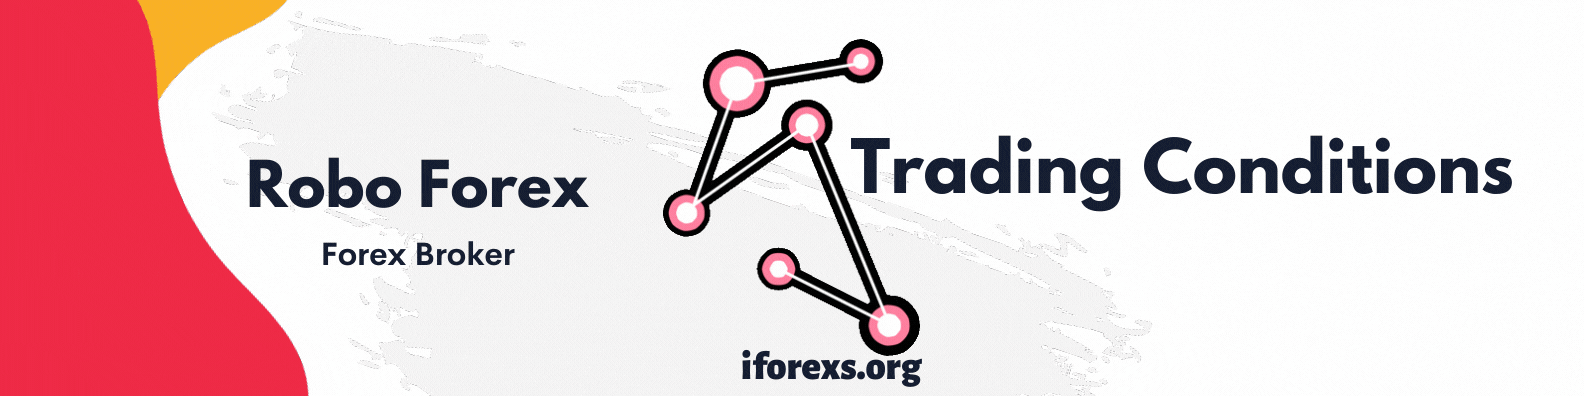 Robo Forex Trading Condition